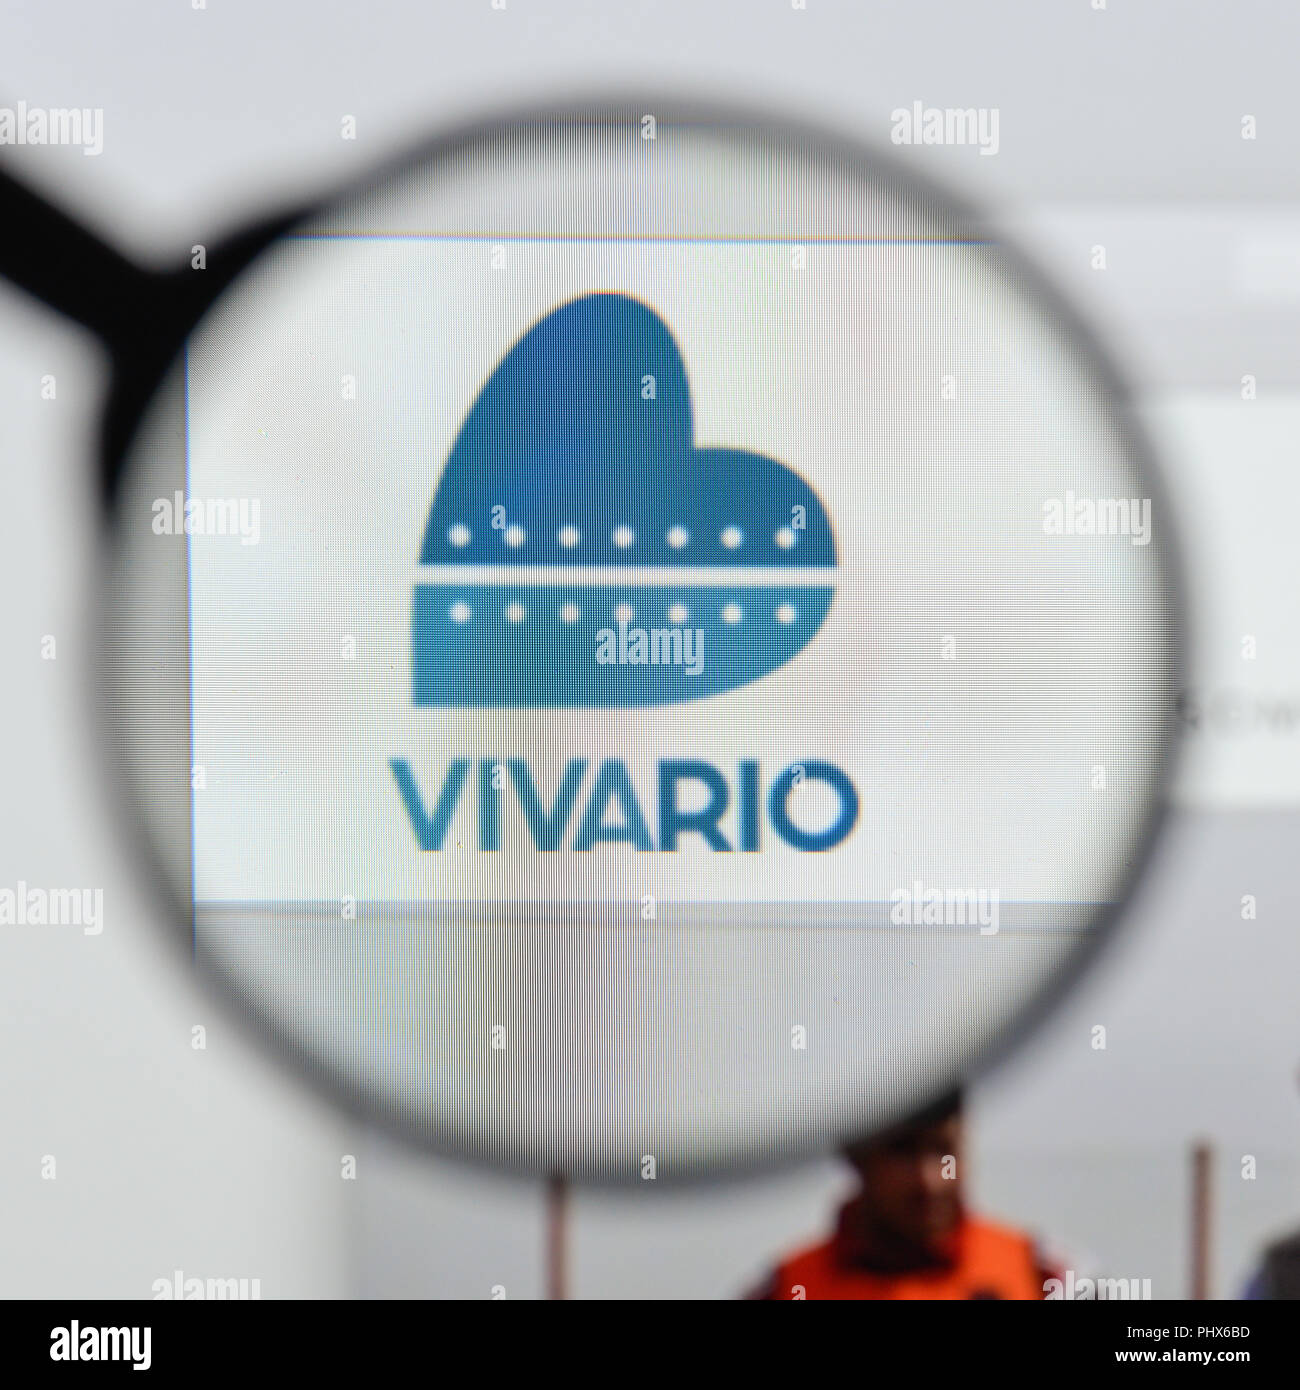 Milán, Italia - 20 de agosto de 2018: Viva Rio Página de inicio de nuestro sitio web. Viva Rio logo visible. Foto de stock